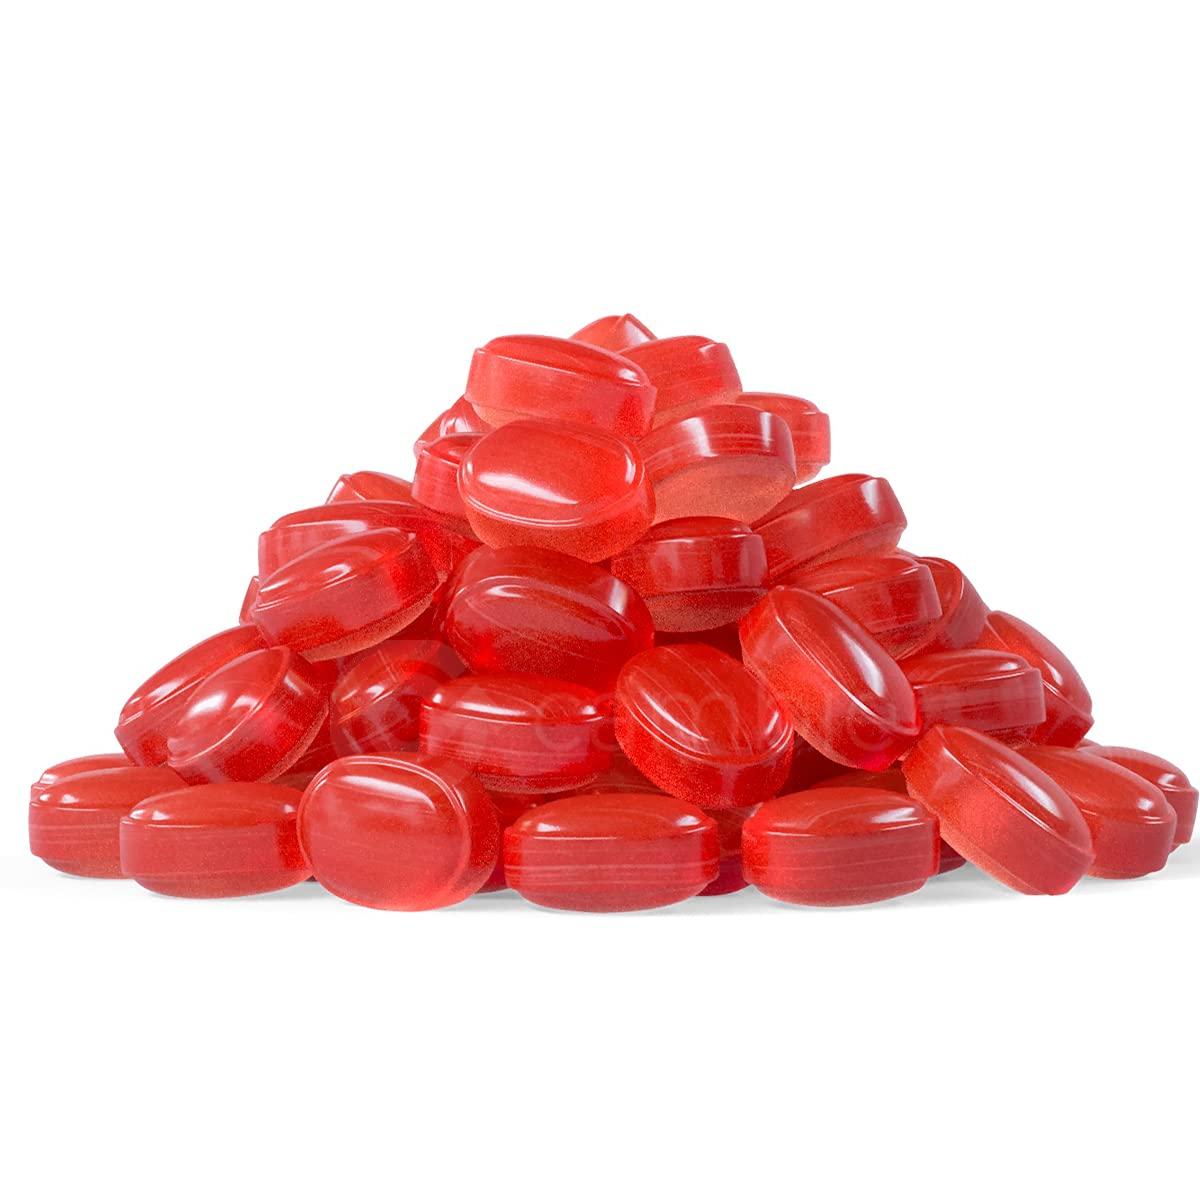 Arcor Strawberry Bon Bons Filled Hard Candy Bulk, 2 Pound Bag